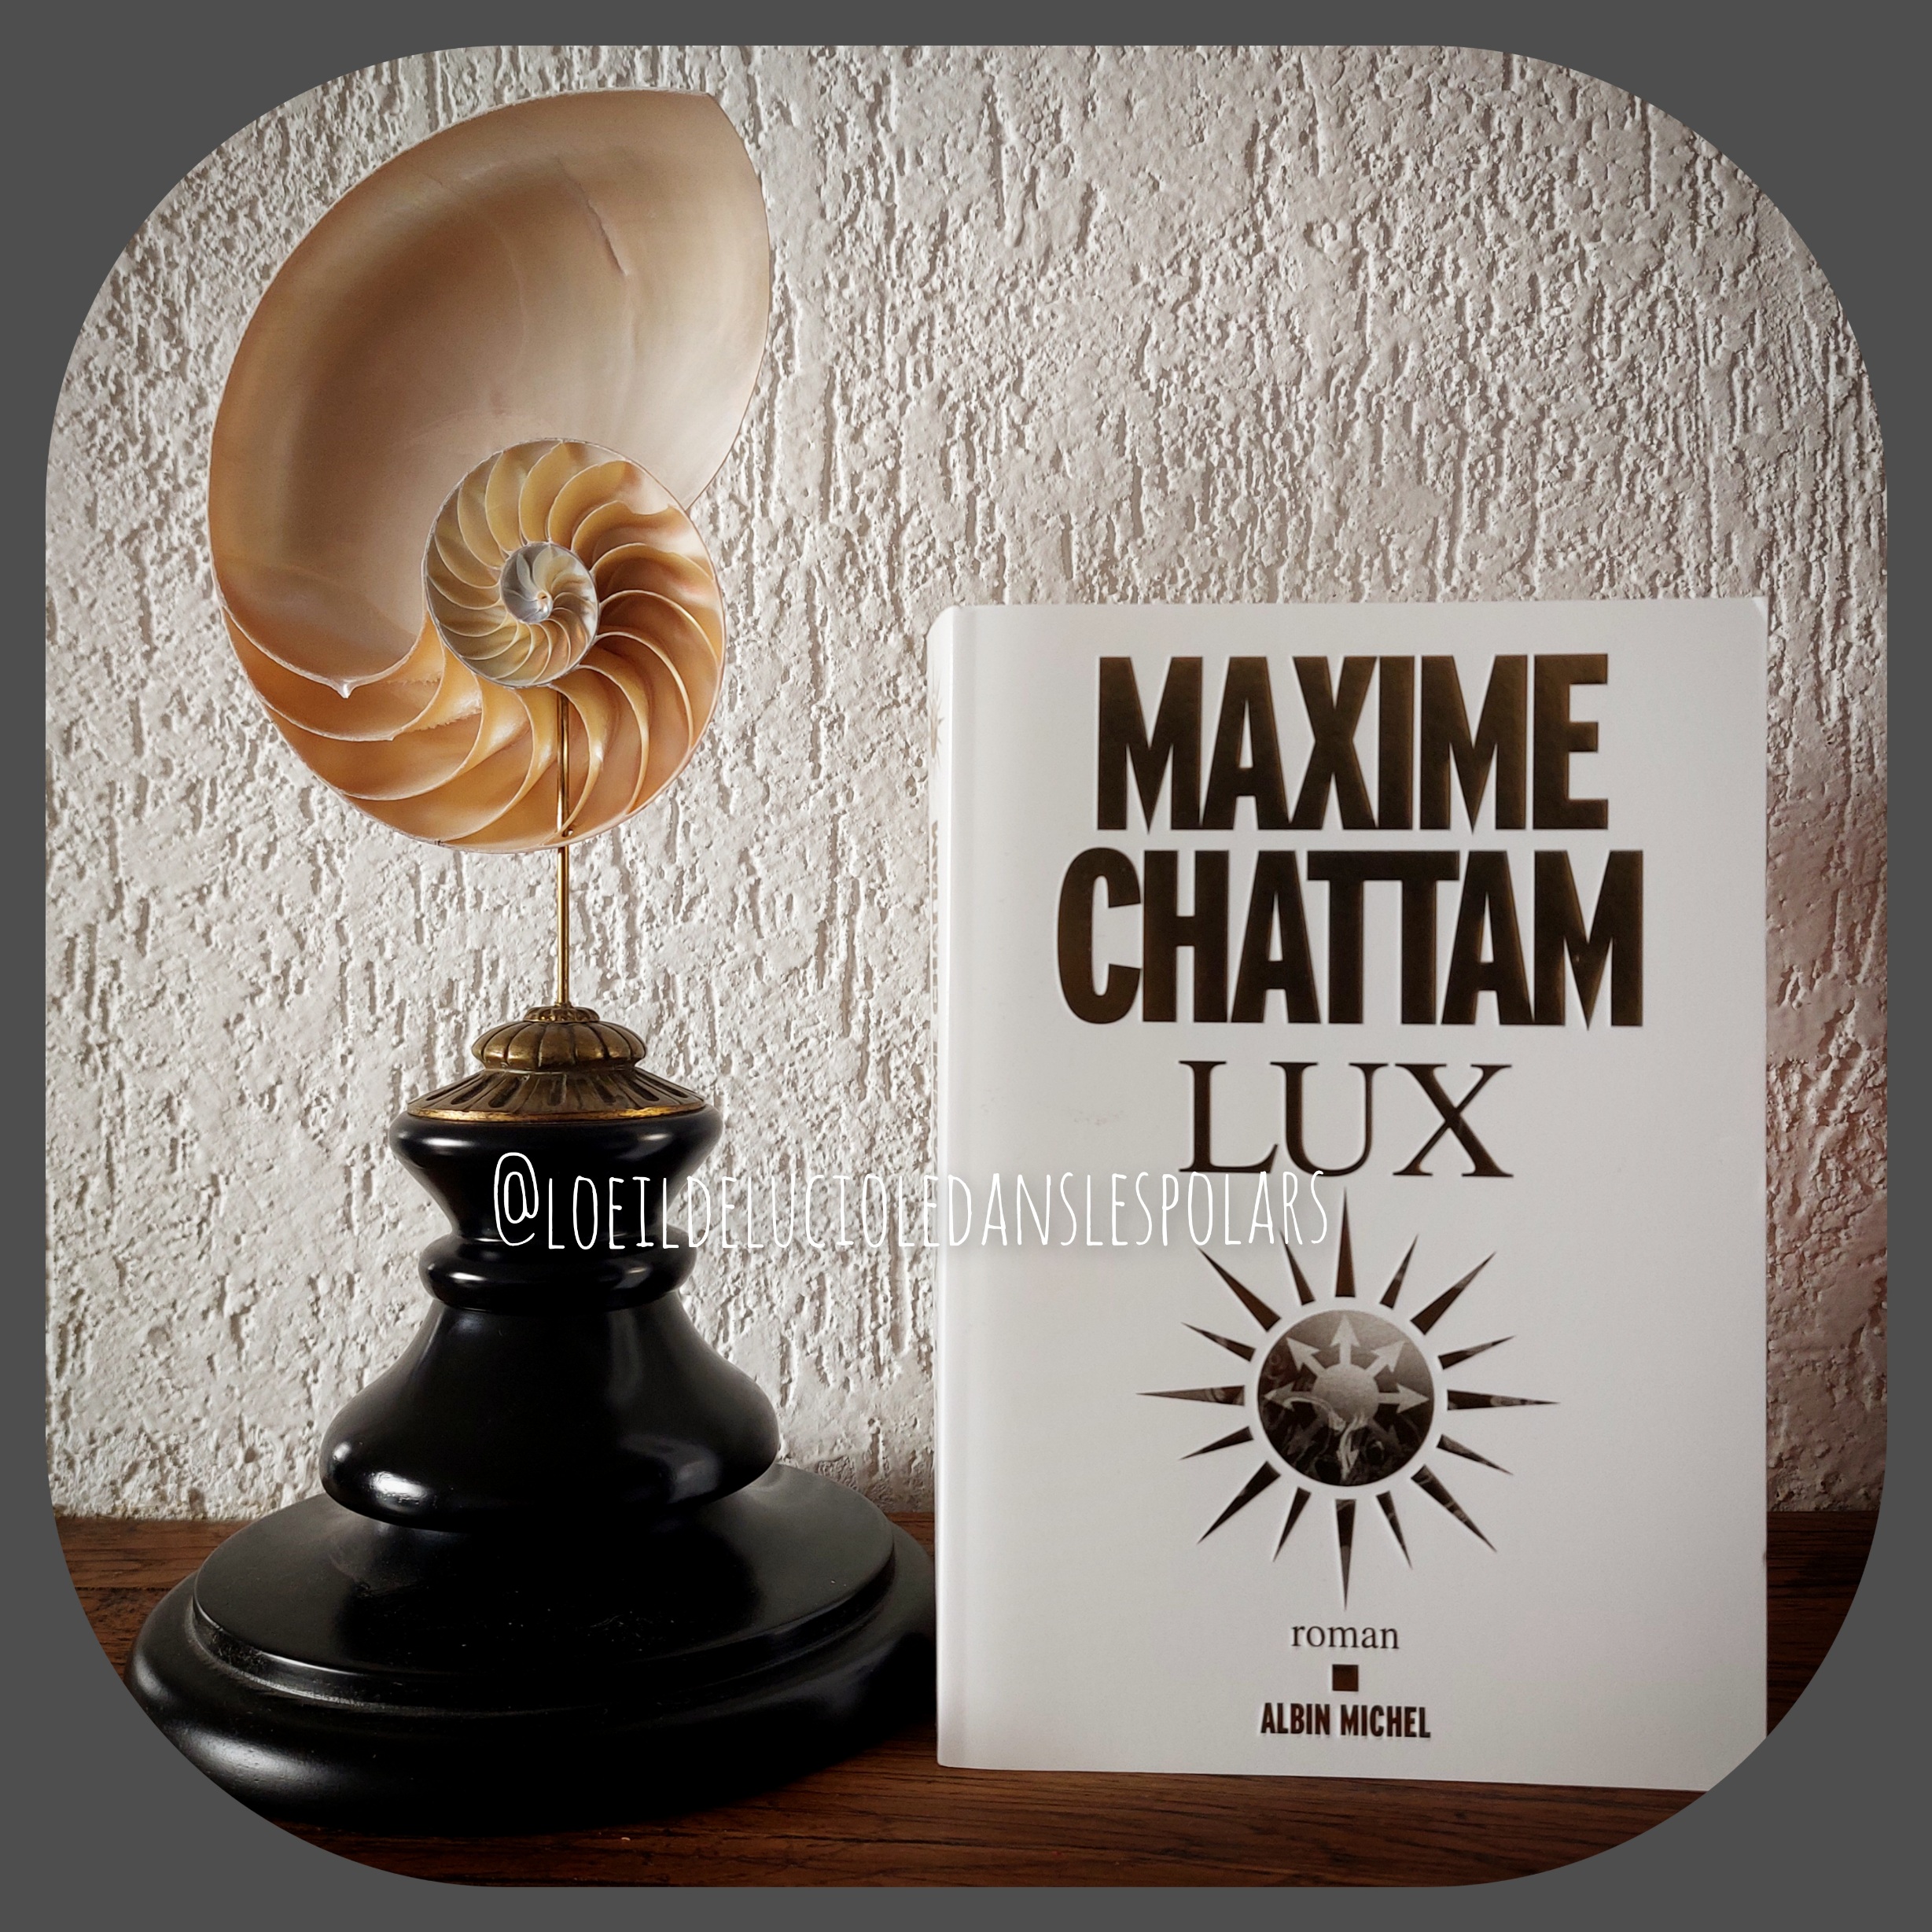 LUX de Maxime Chattam